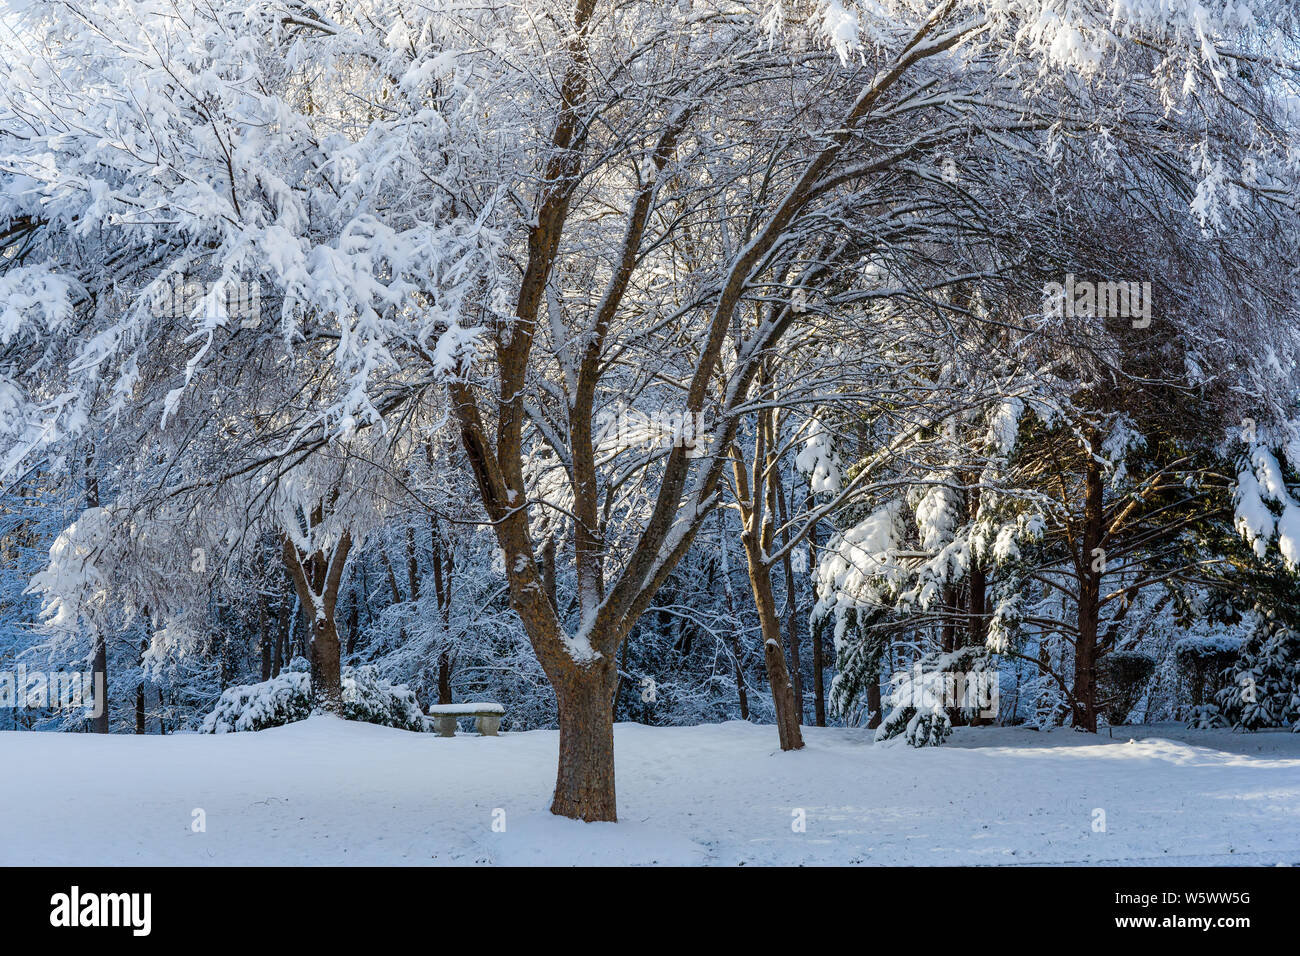 Morning light illuminates snow covered trees Stock Photo